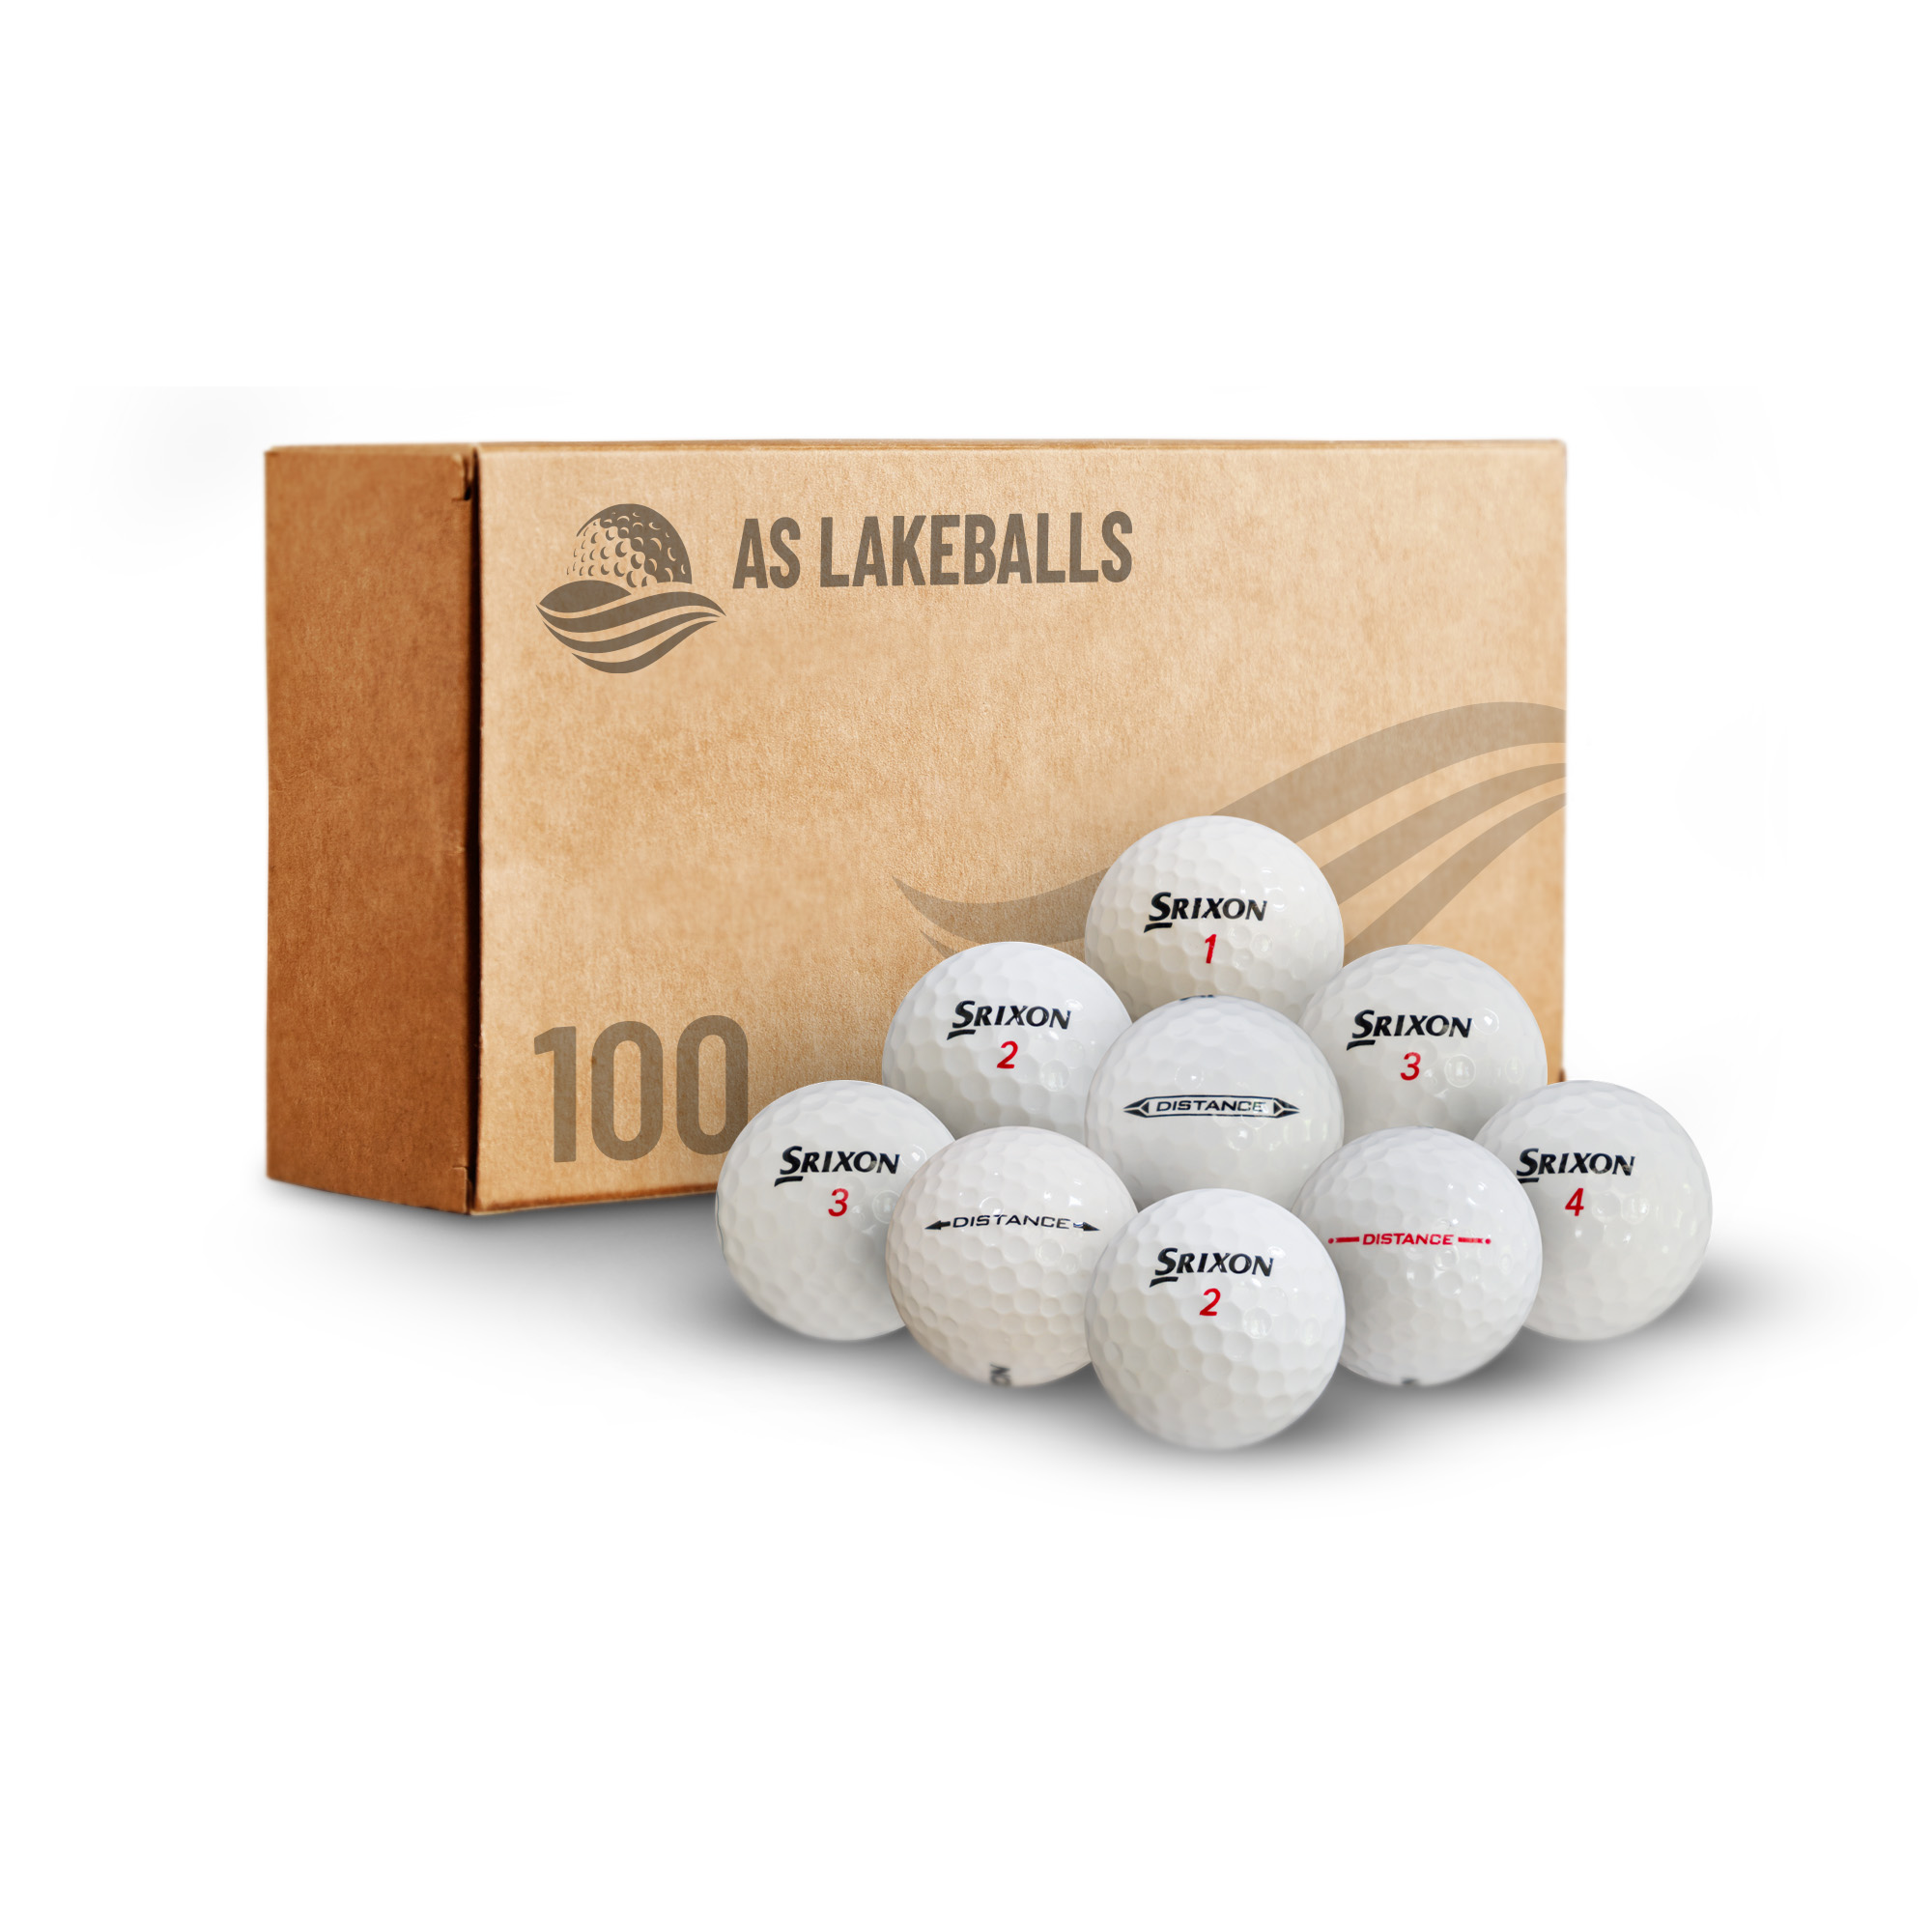 100 Srixon Distance AA-AAA bei AS Lakeballs günstig kaufen